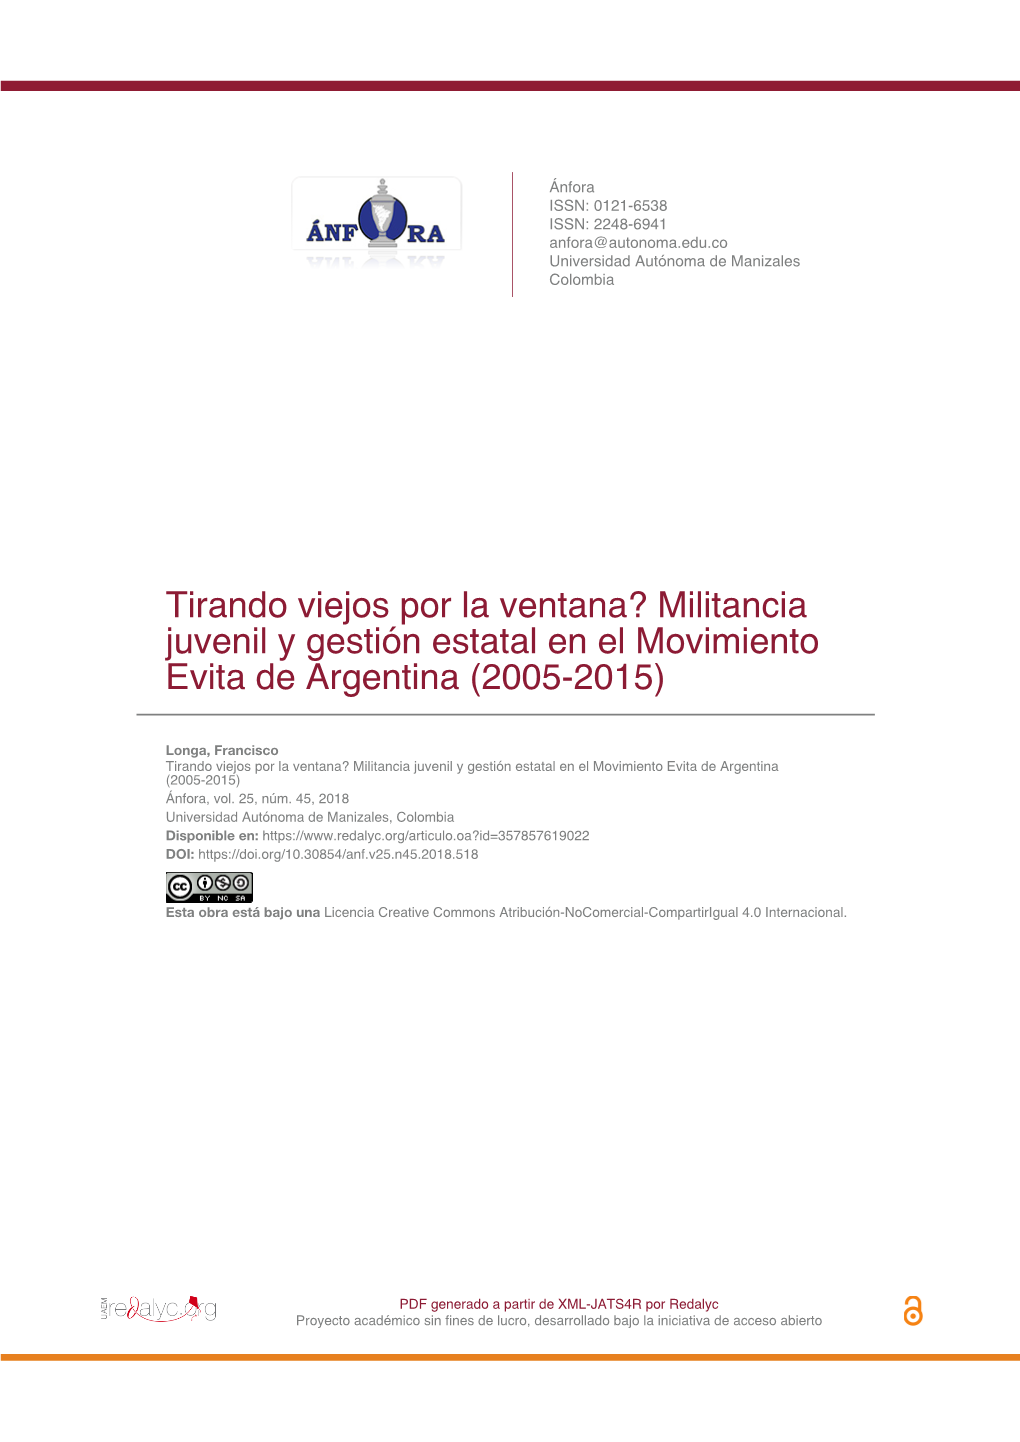 Militancia Juvenil Y Gestión Estatal En El Movimiento Evita De Argentina (2005-2015)